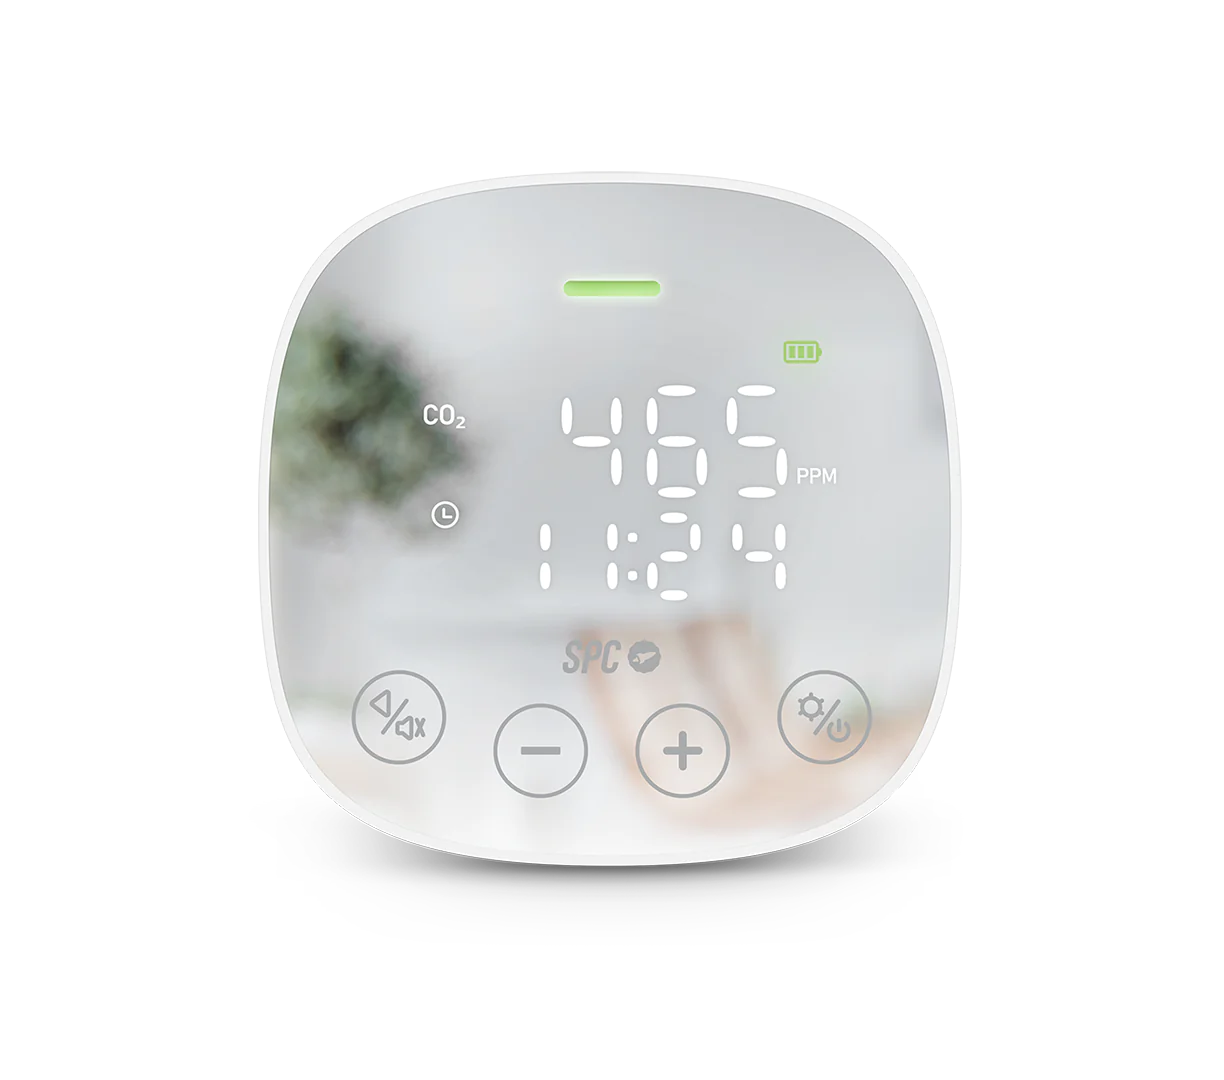 Spc Co2 Air Quality Medidor De Co2 Con Alarma Visual Y Sonora - Tambien Registra Temperatura Y Humedad - Pantalla Led